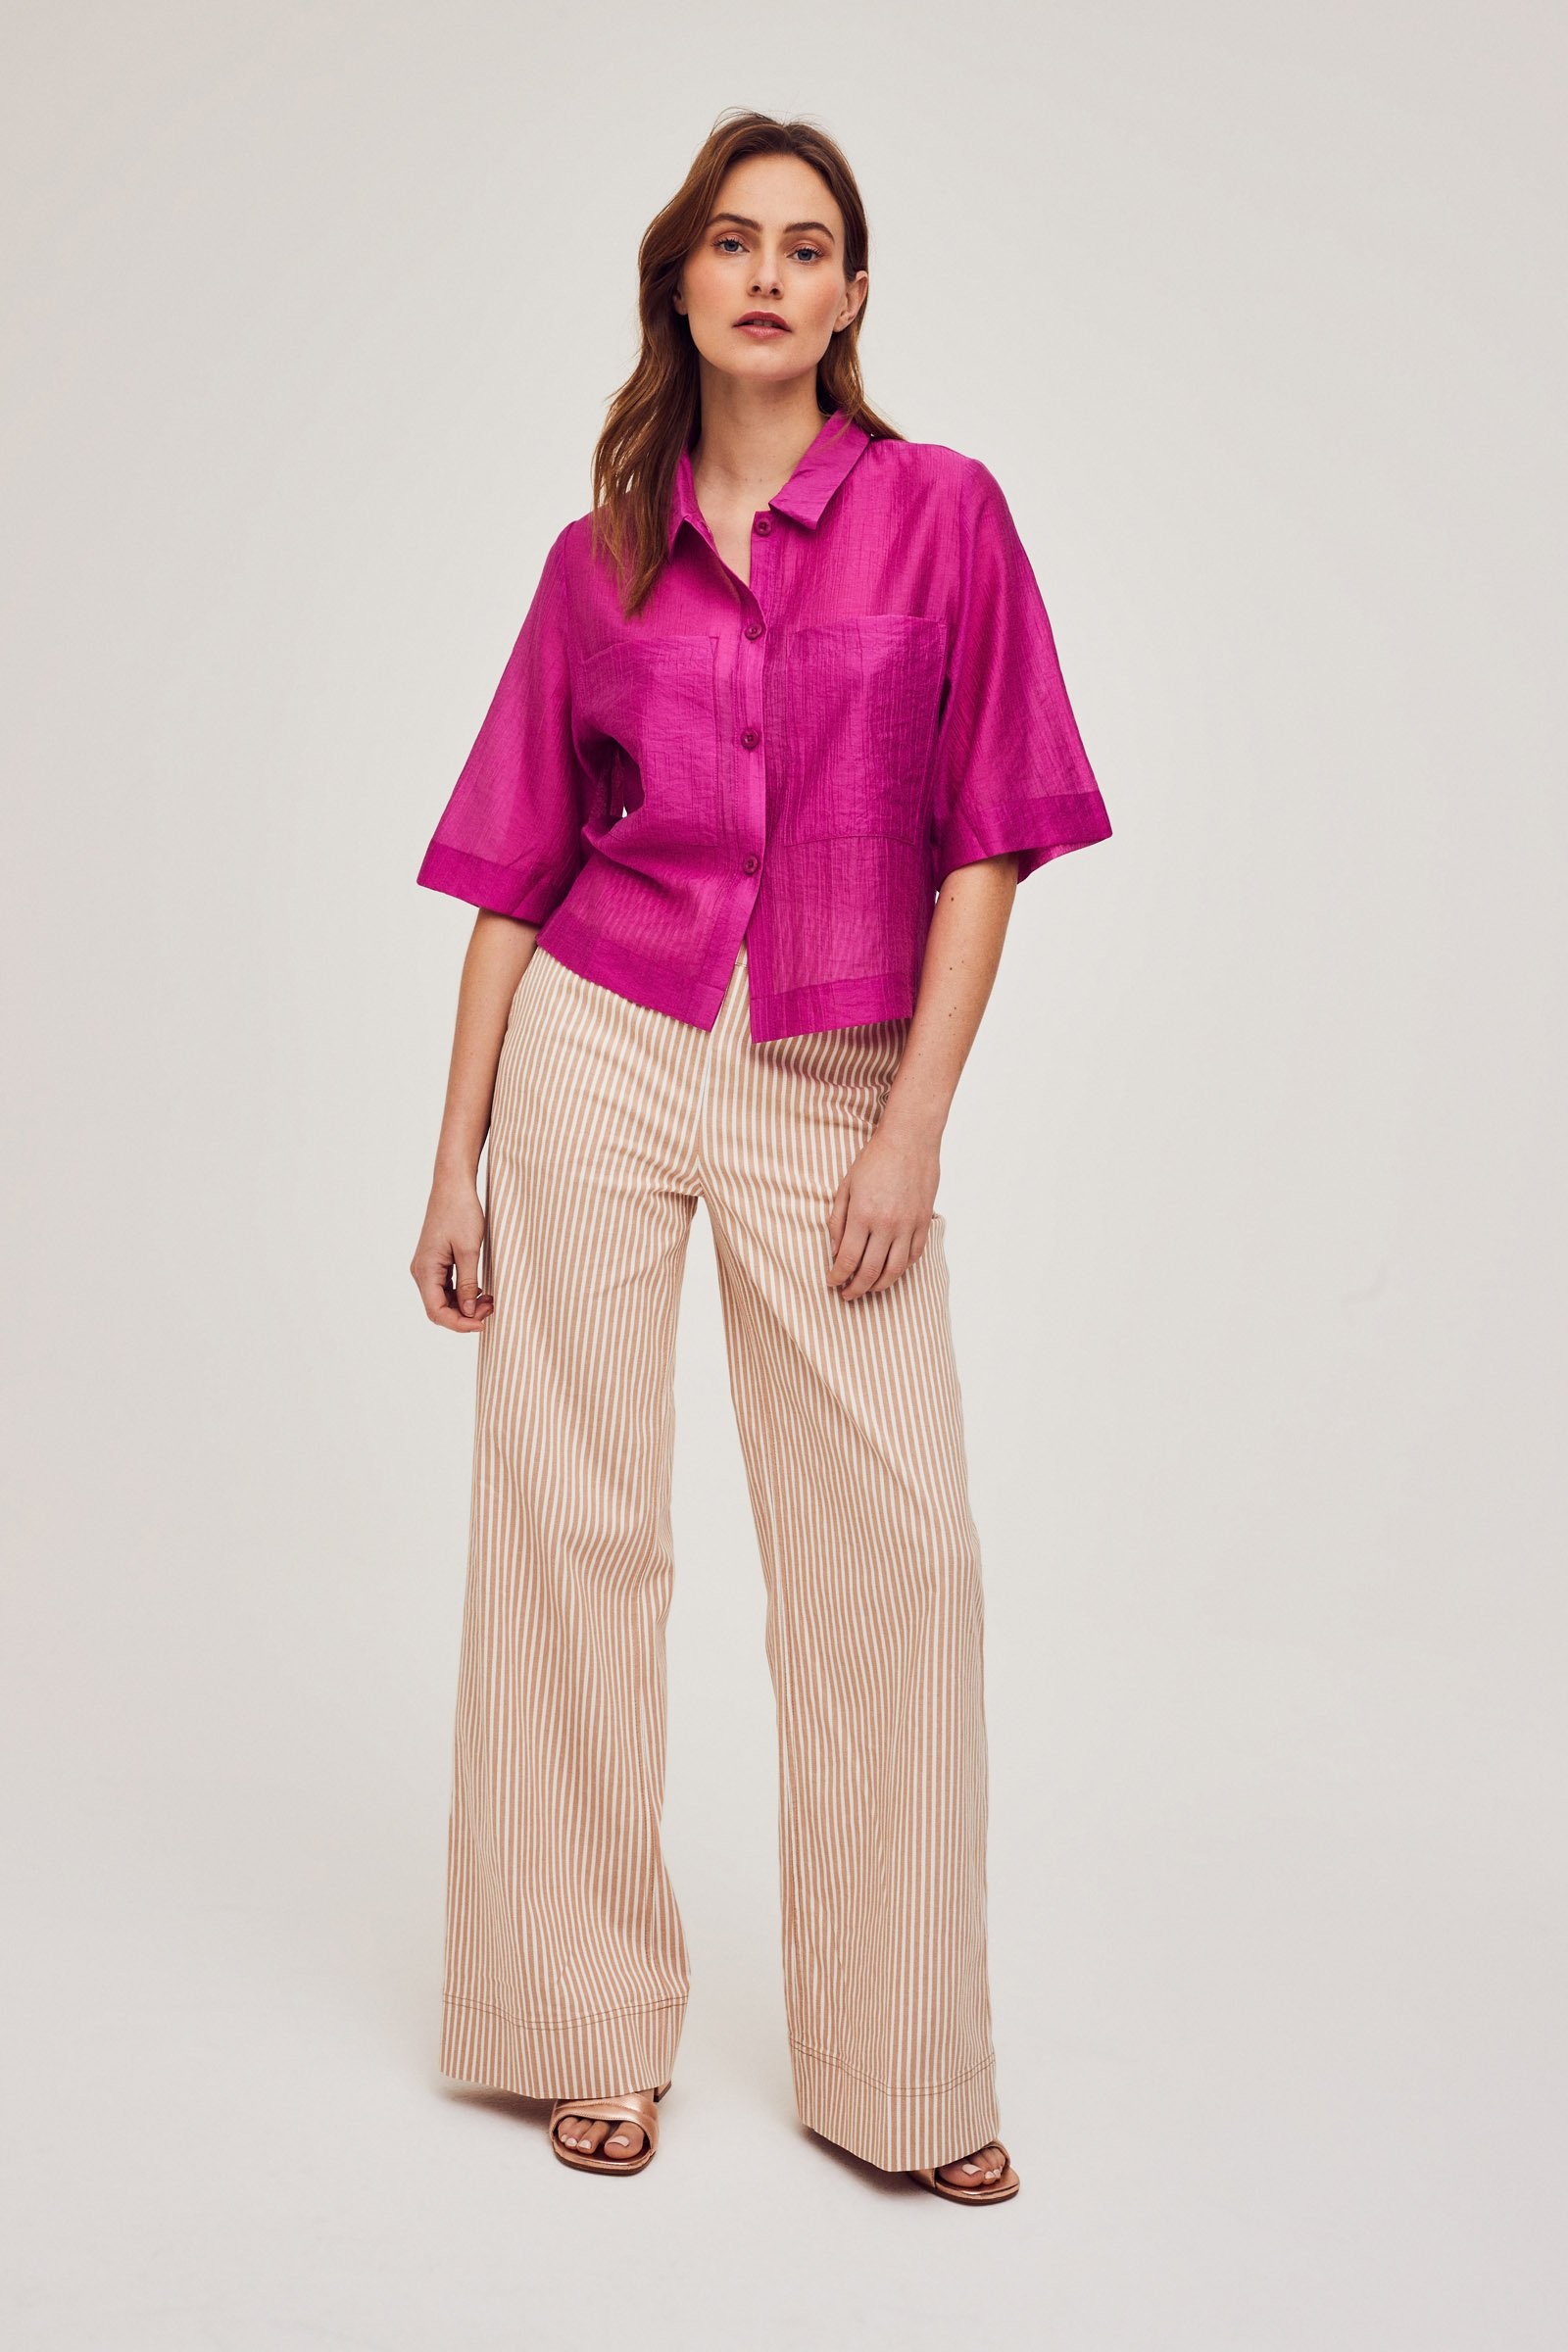 CKS Dames - SELIN - blouse korte mouwen - roze